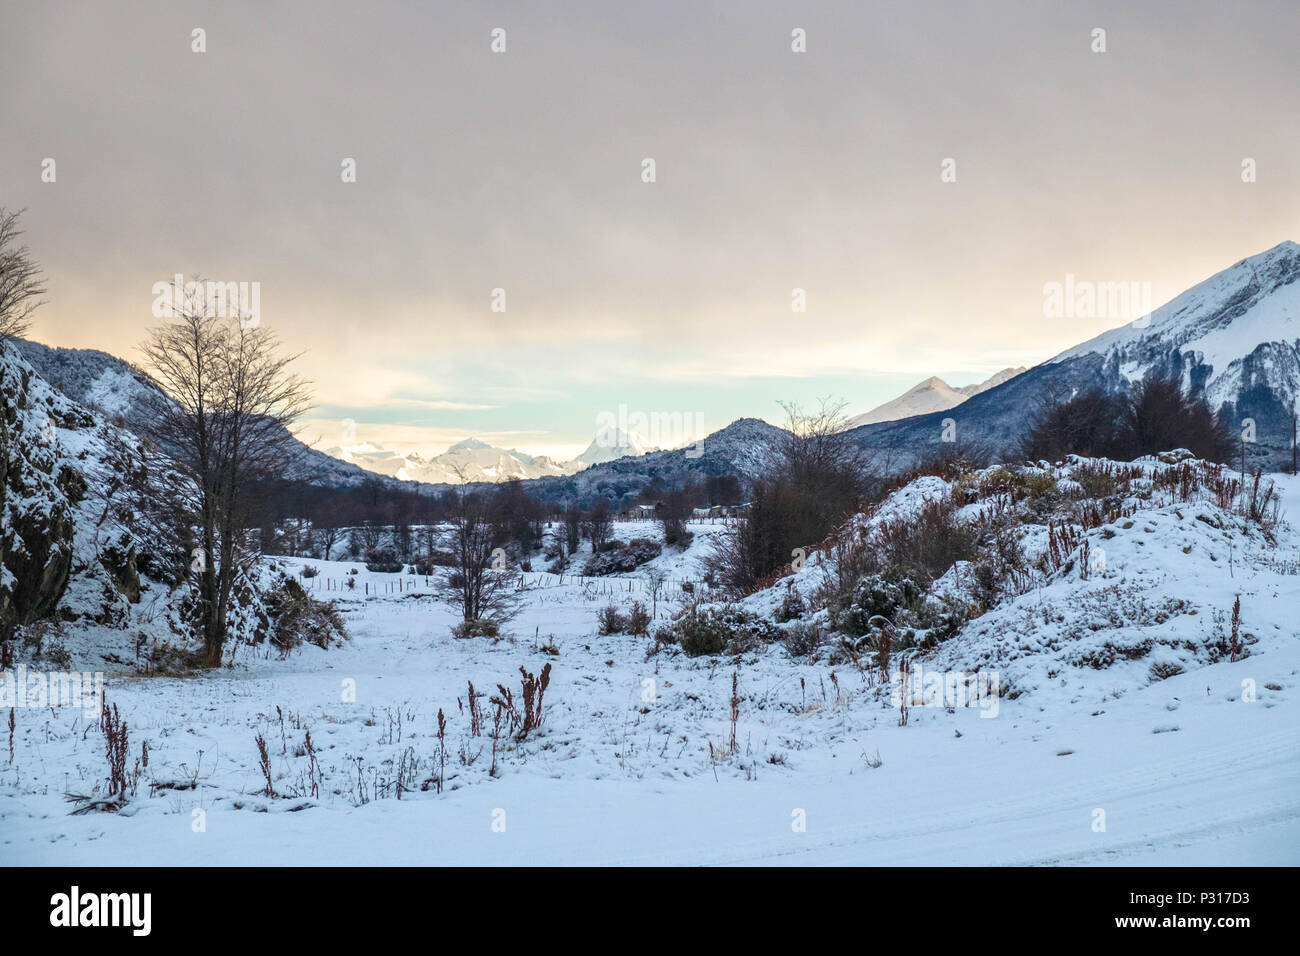 En hiver, la route du parc national de la Terre de Feu a parfois neigé. C'est une vue sur la vallée entre la ville et le parc. Banque D'Images